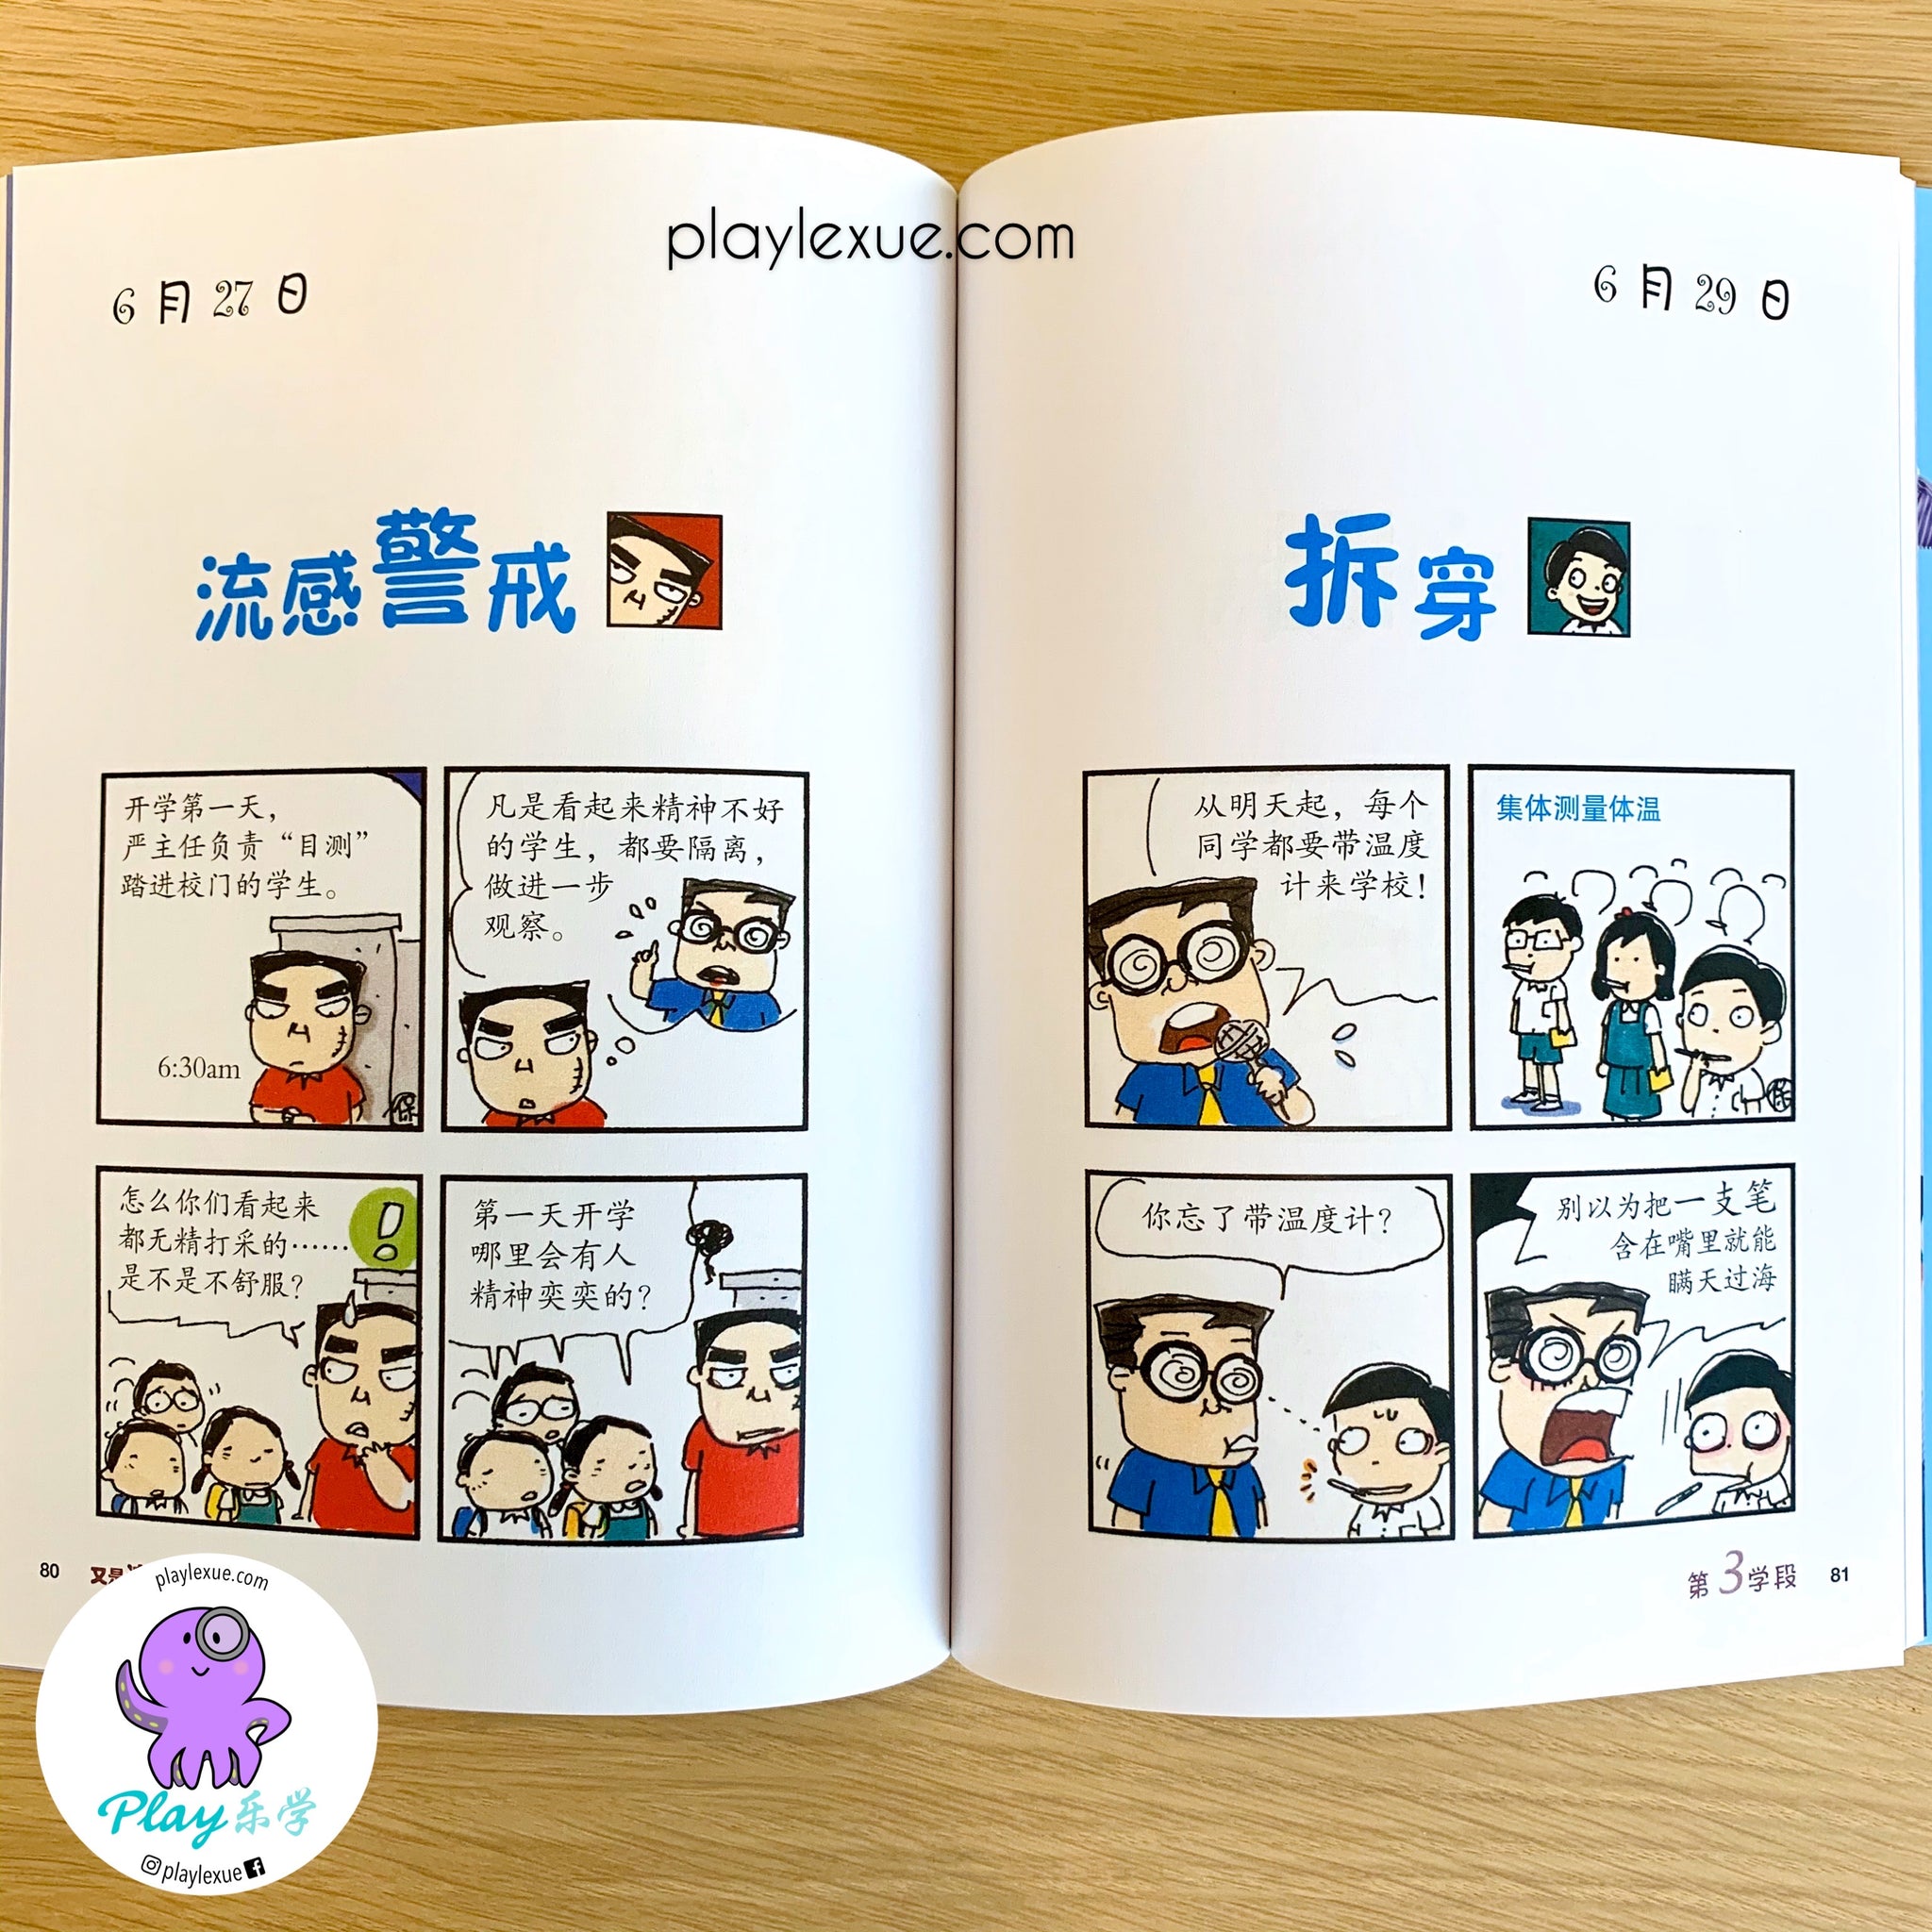 又是这一班 校园故事漫画 This Class Again Comic Series Play乐学 Chinese Learning Activities Resources